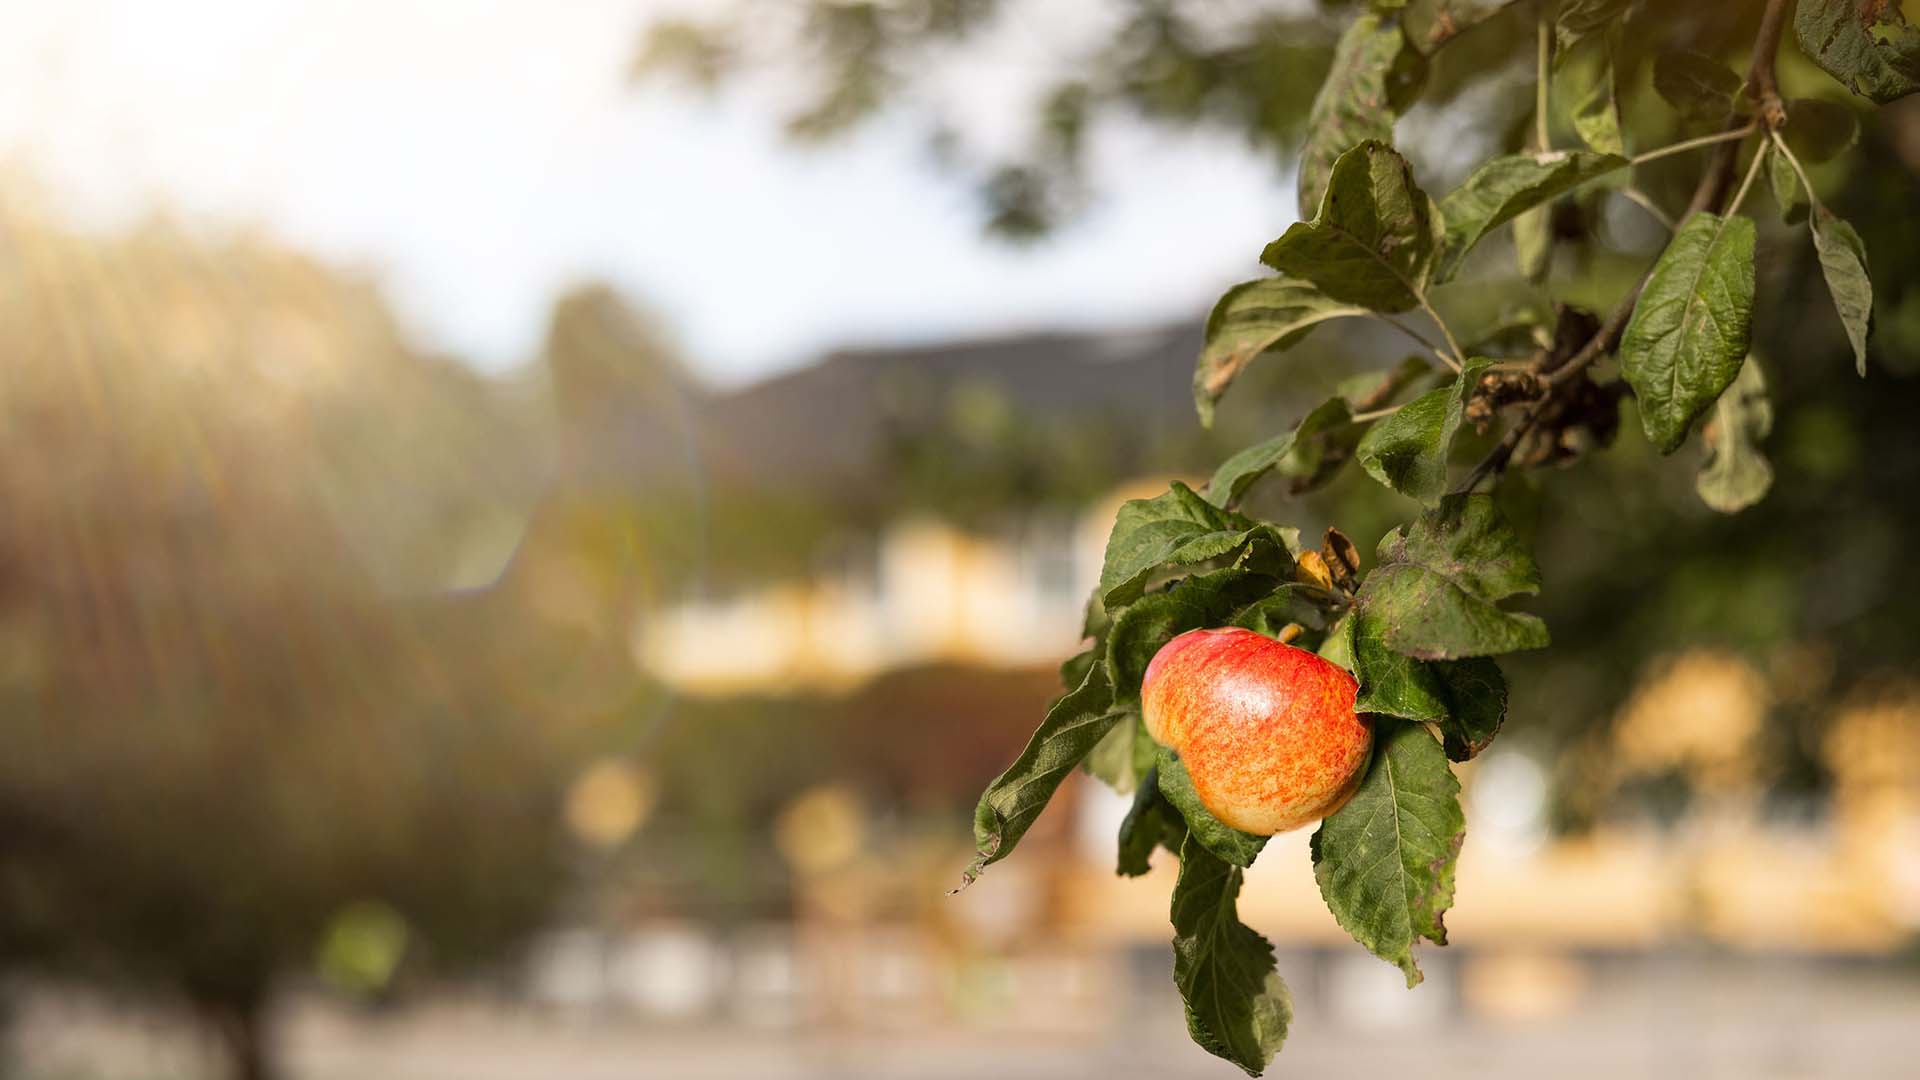 ett vackert äpple hänger i ett träd i förgrunden, ednahemmet i bakgrunden